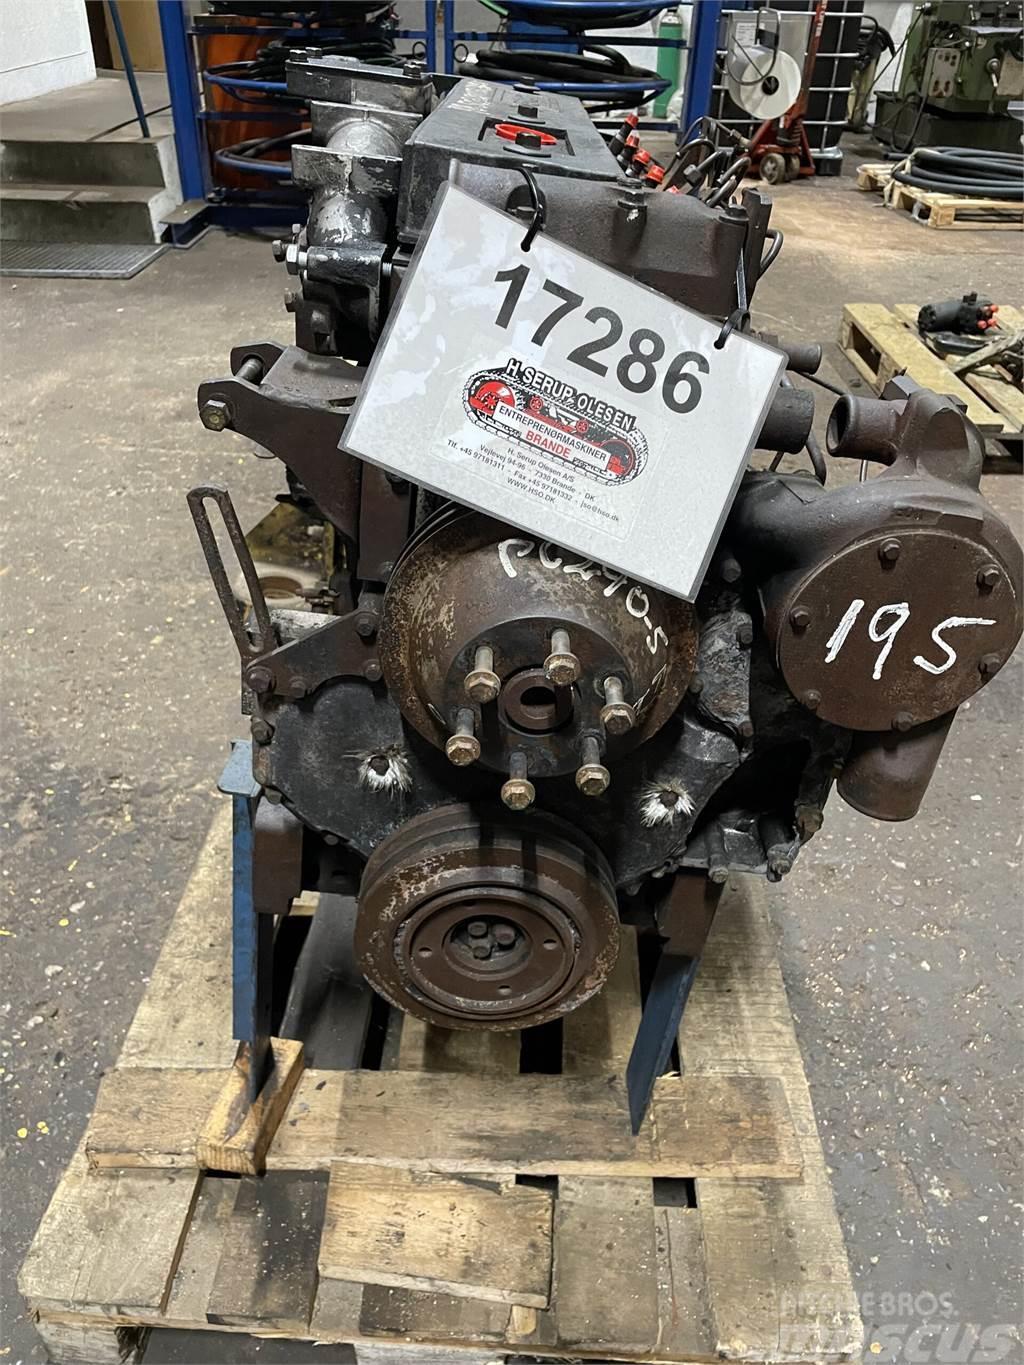 Perkins 1006 motor, brandskadet Engines